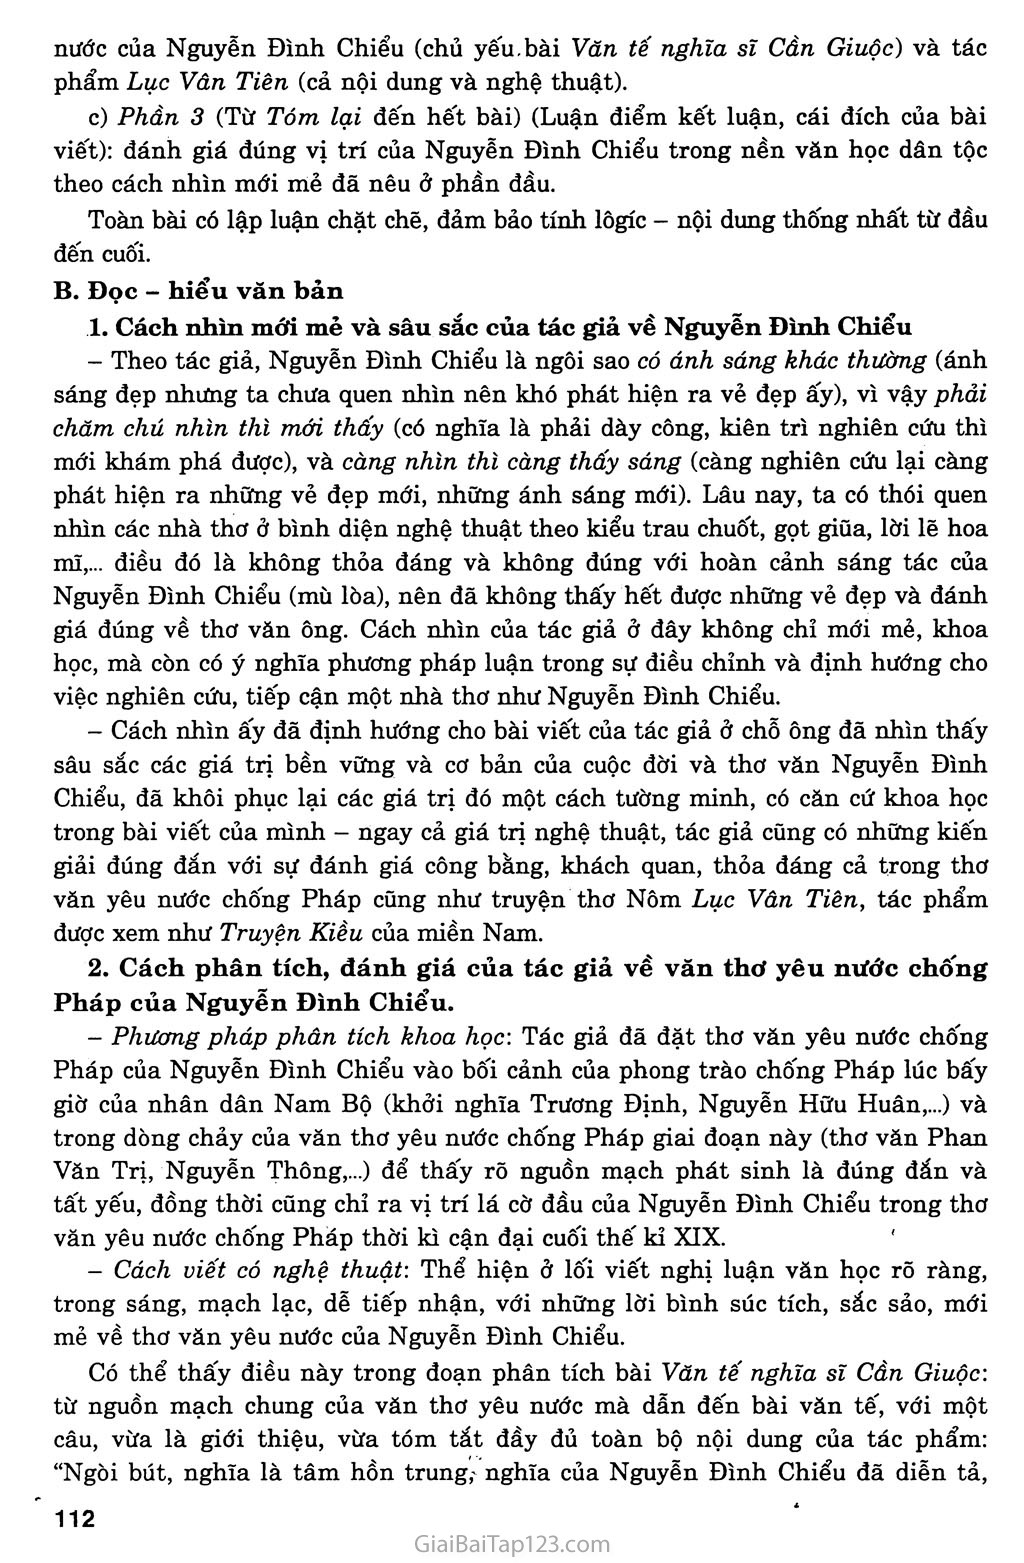 Nguyễn Đình Chiểu, những ngôi sao sáng trong văn nghệ của dân tộc (Phạm Văn Đồng, 1963) trang 2